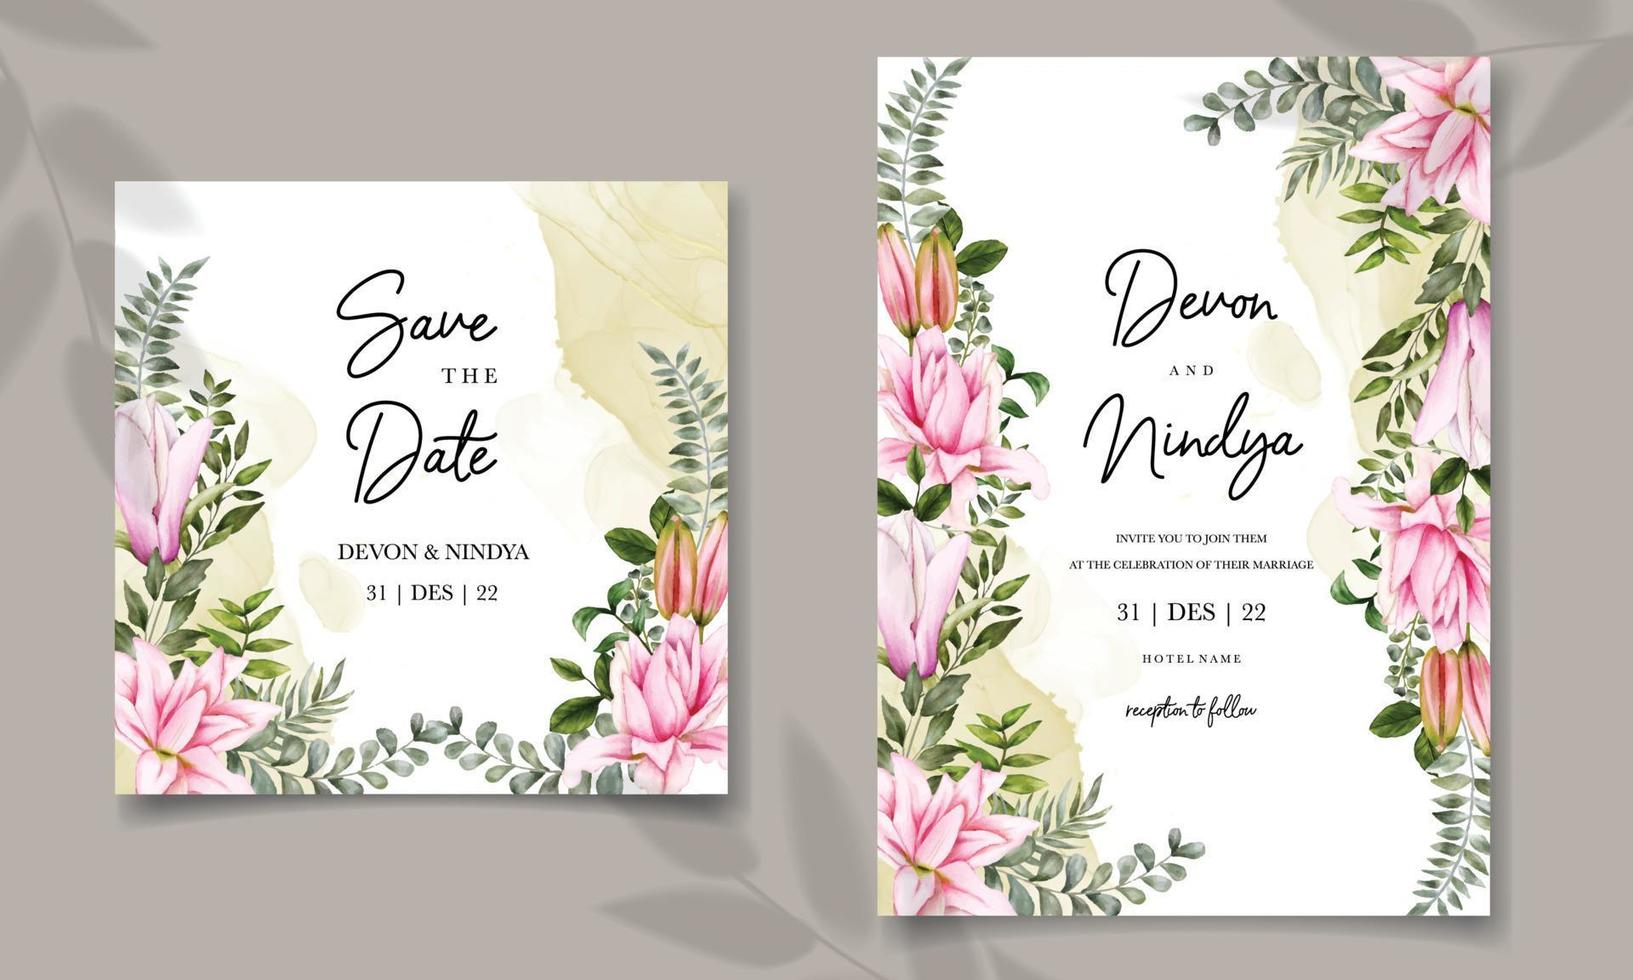 conjunto de plantillas de tarjeta de invitación de boda vector